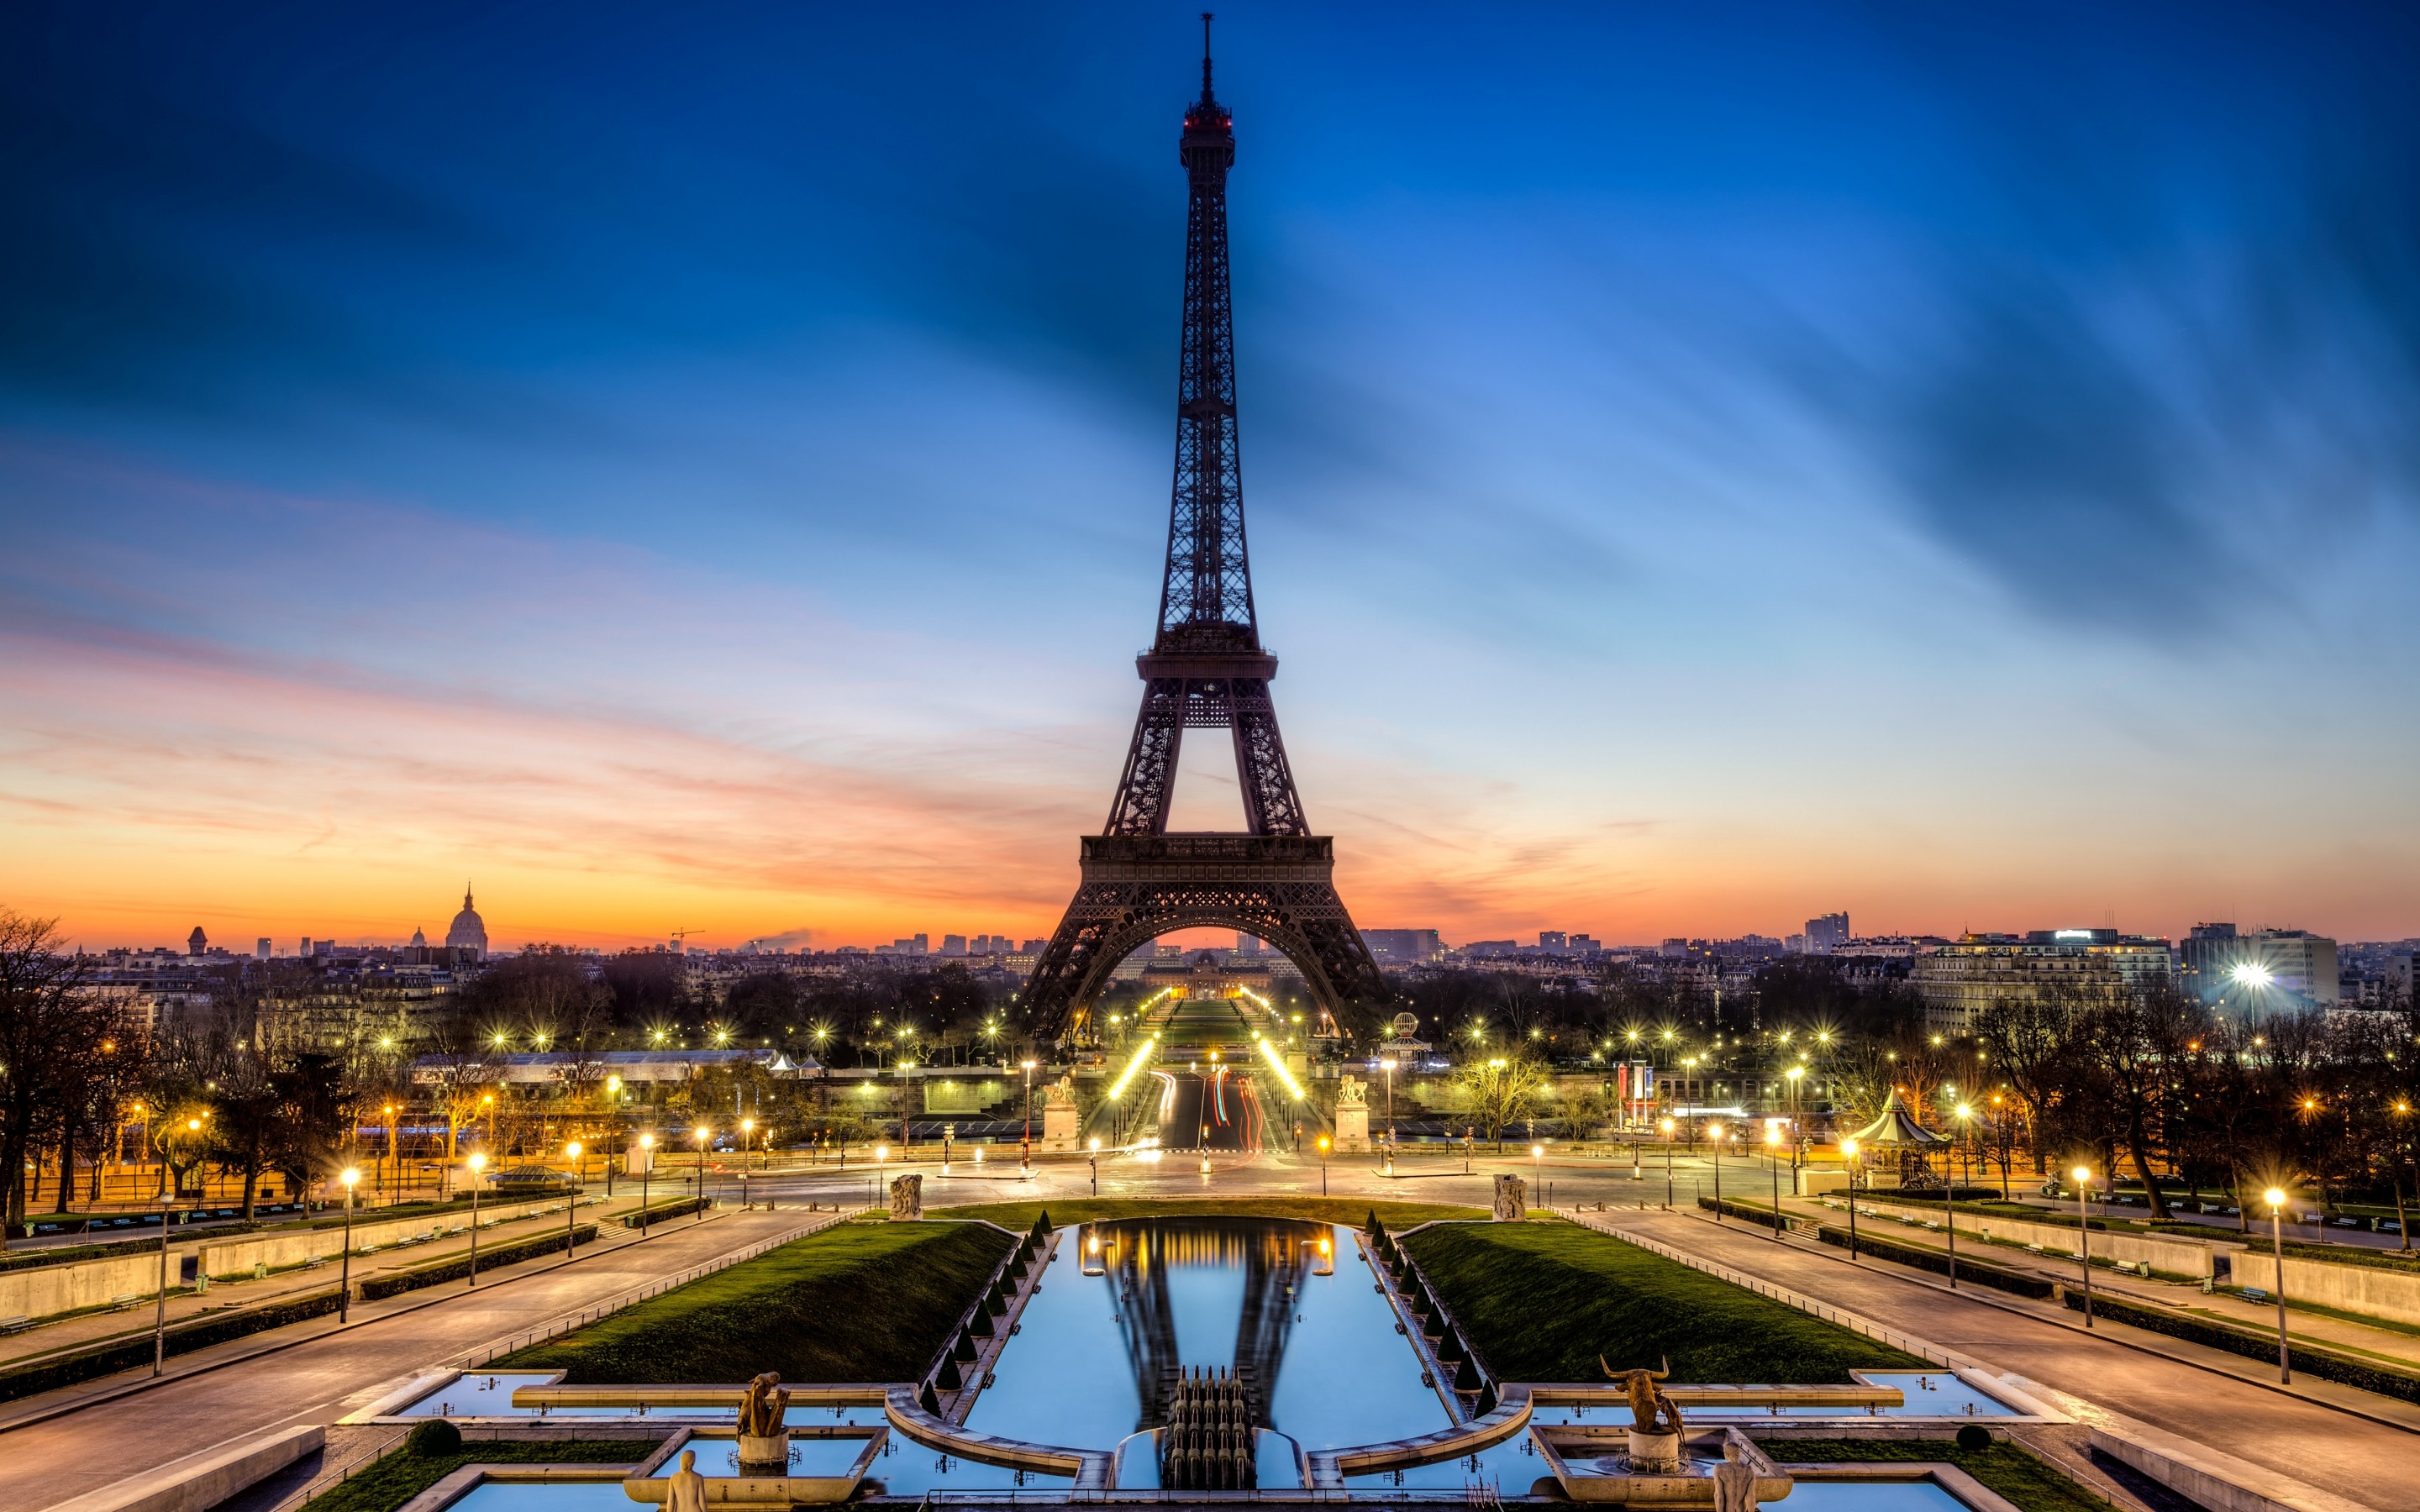 _Eiffel Tower at Night, Paris, France загрузить